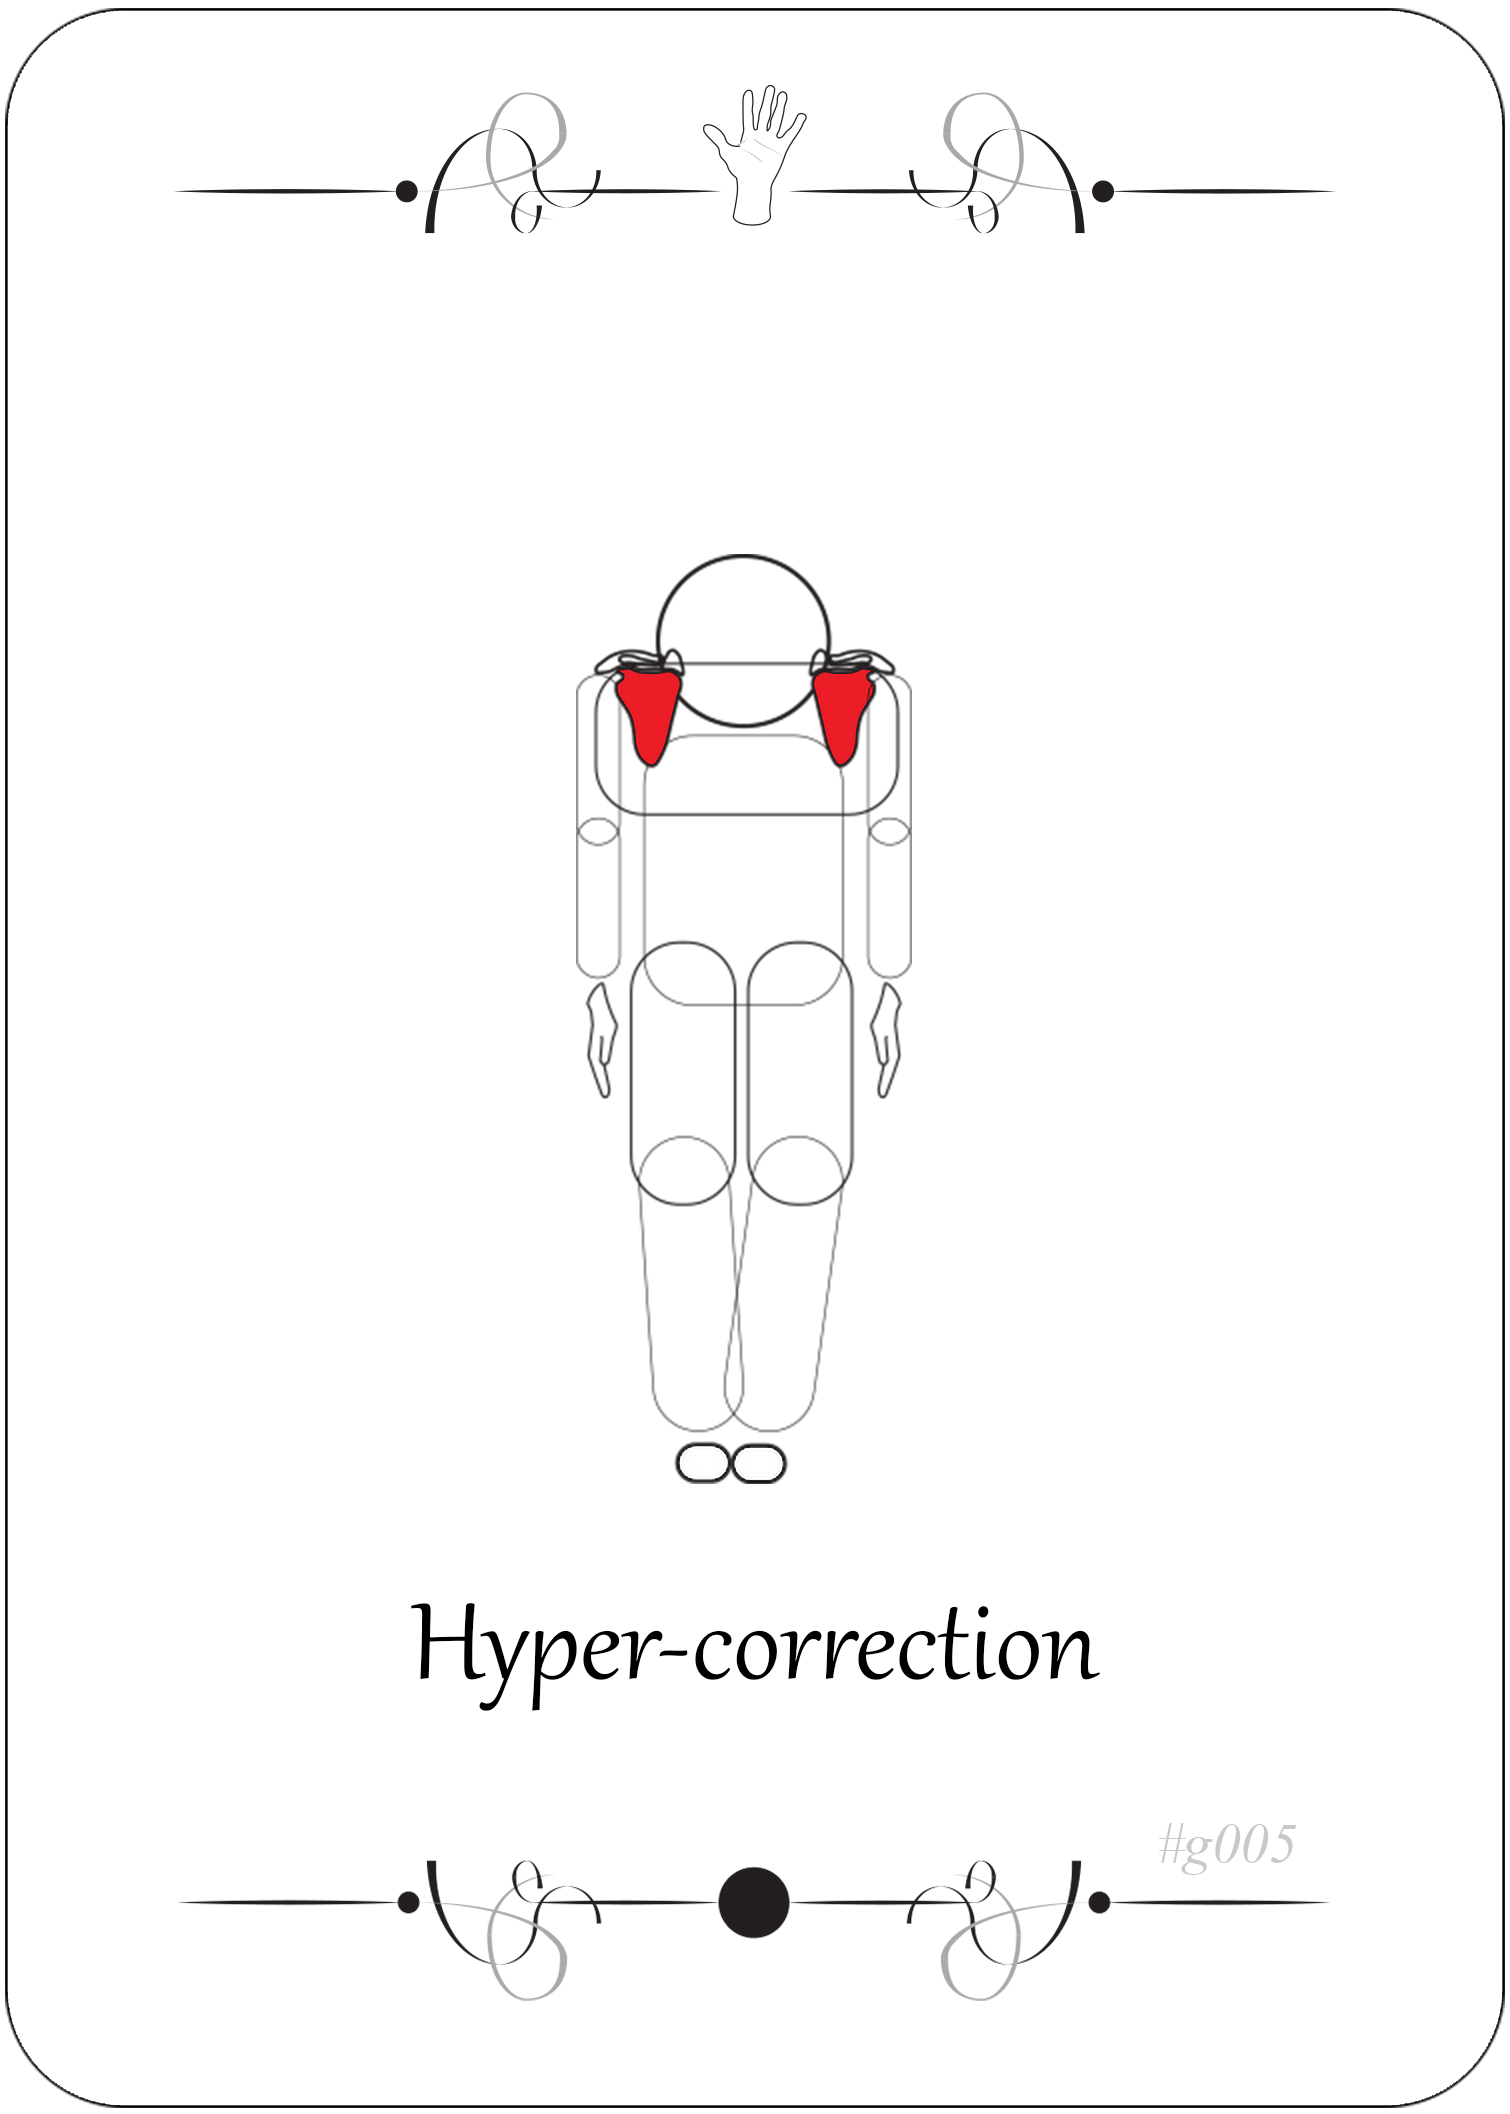 Hyper-correction